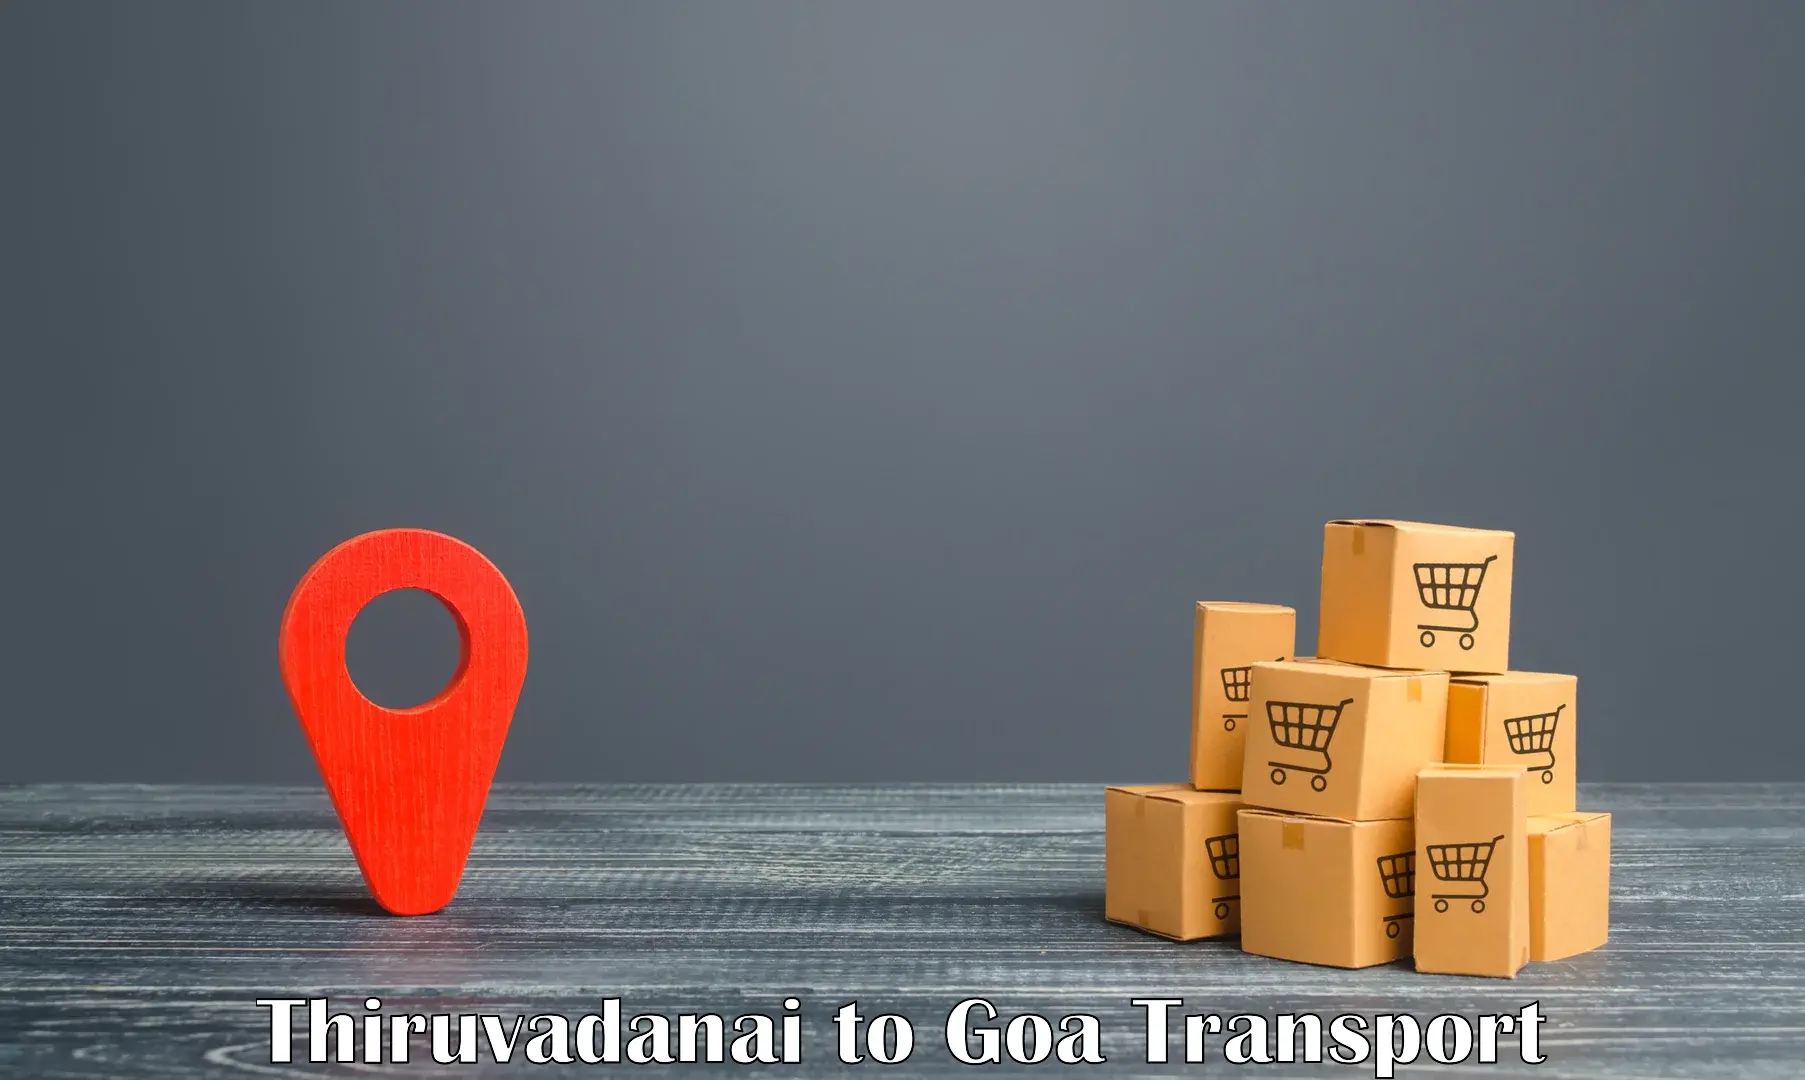 Truck transport companies in India Thiruvadanai to Ponda